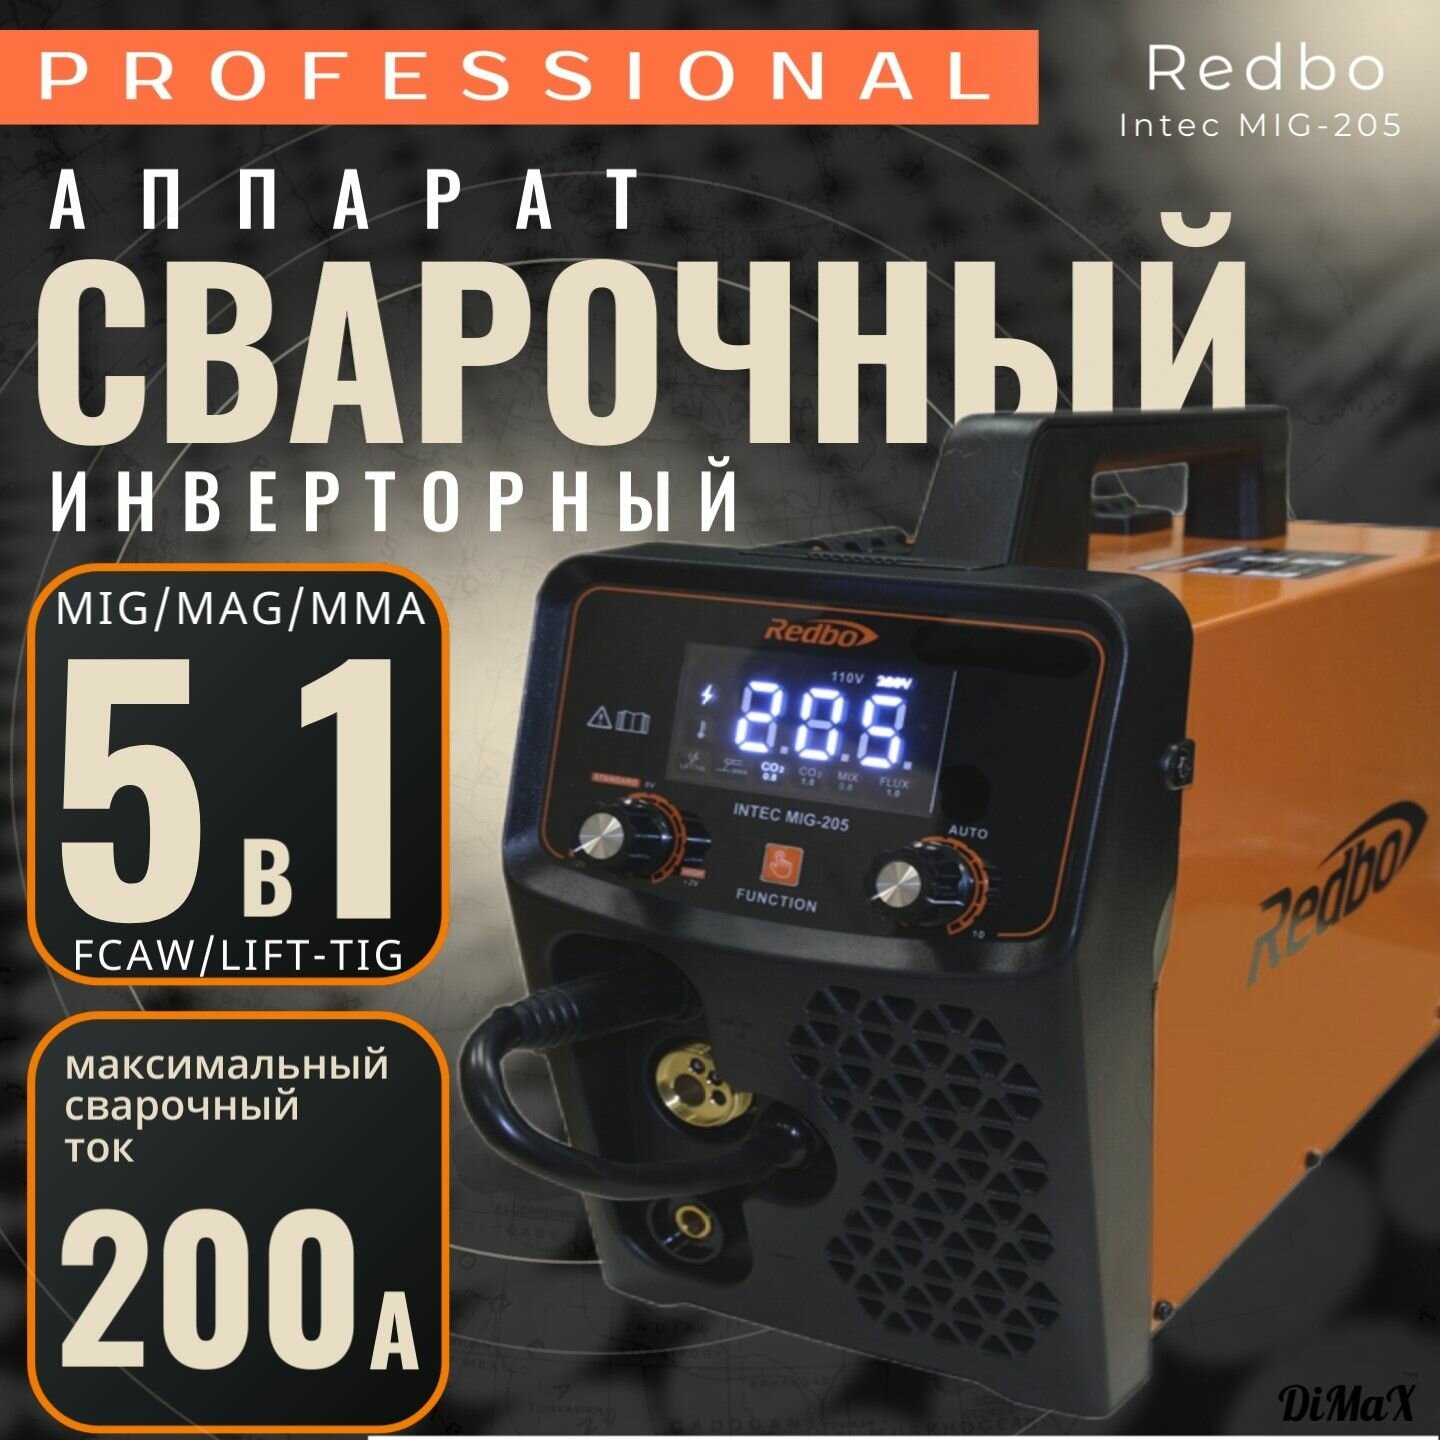 Сварочный аппарат Redbo Intec Mig-205 инвертортный полуавтомат 5в1